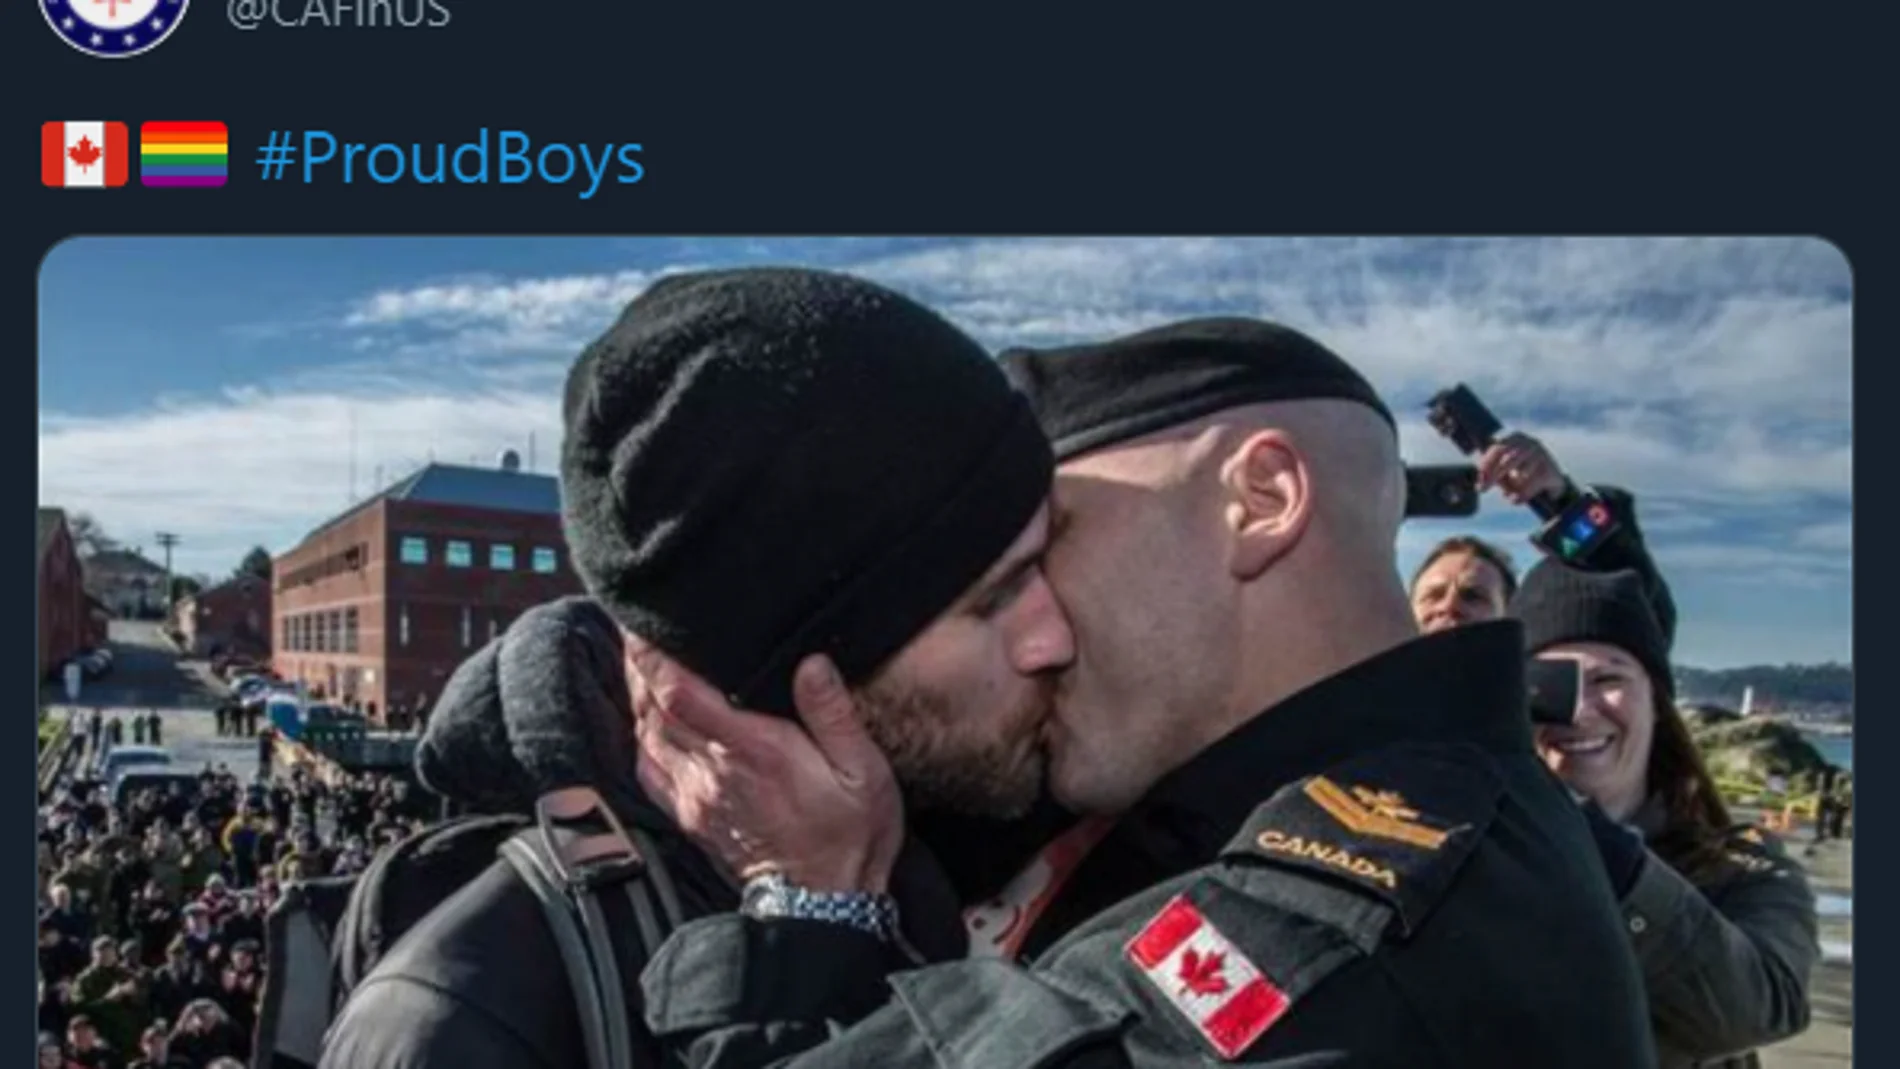 Imagen publicada por el Ejército de Canadá con el hashtag #ProudBoys